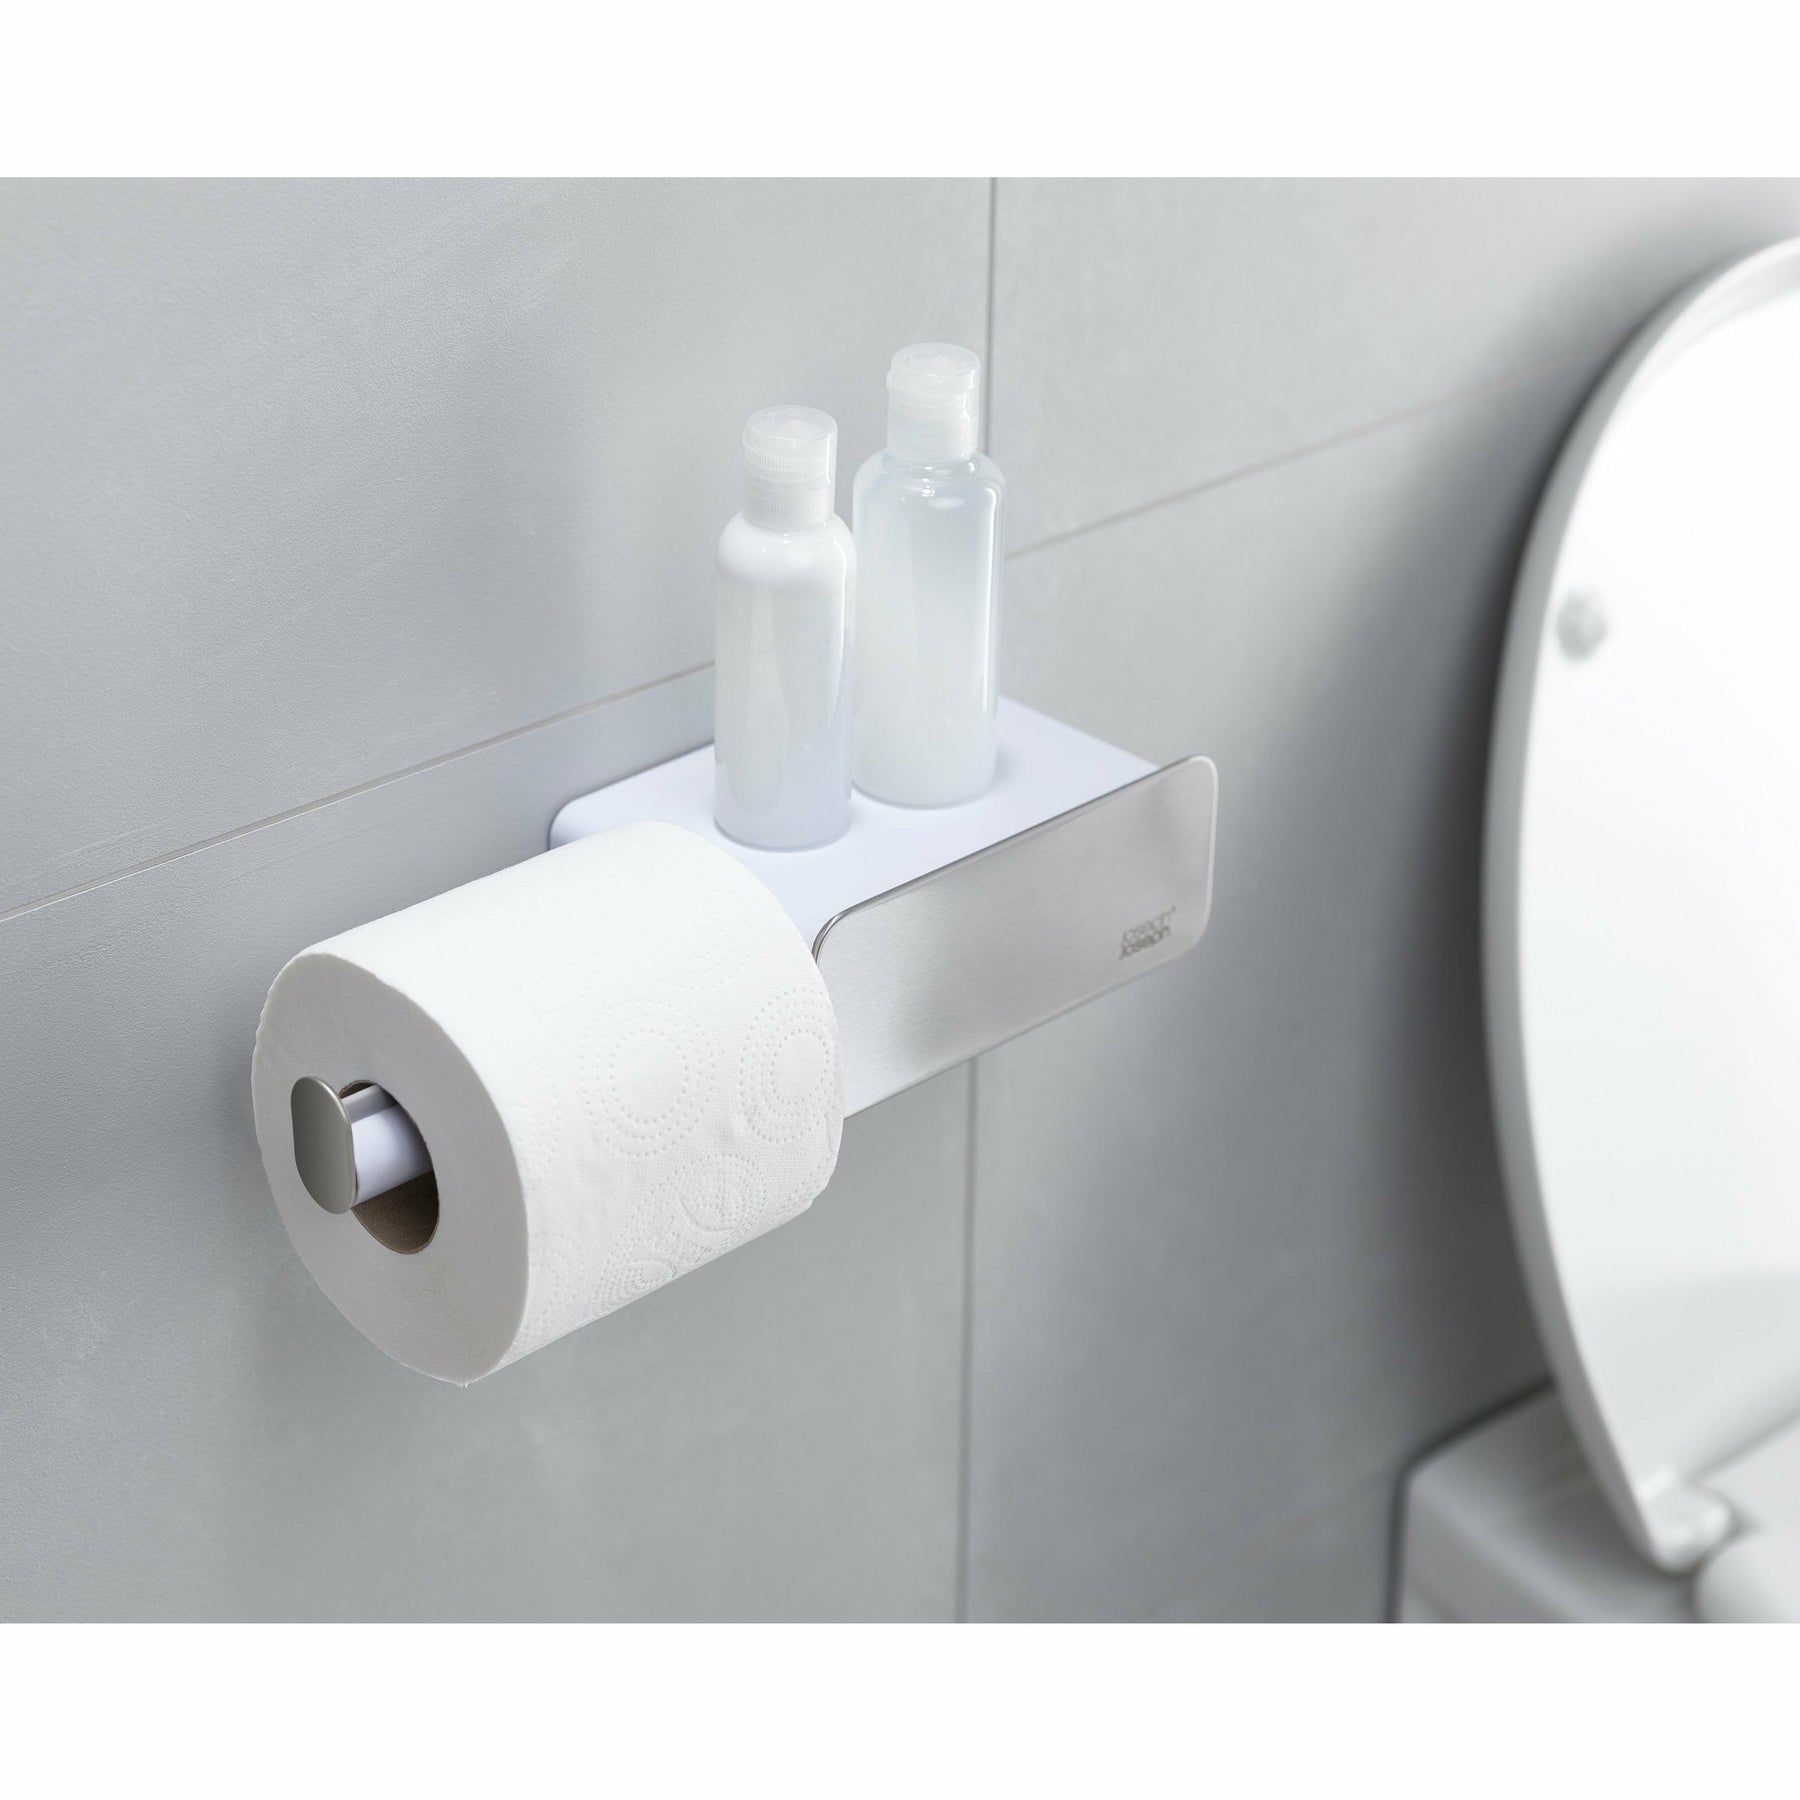 Oxo Toilet Plunger – Tarzianwestforhousewares